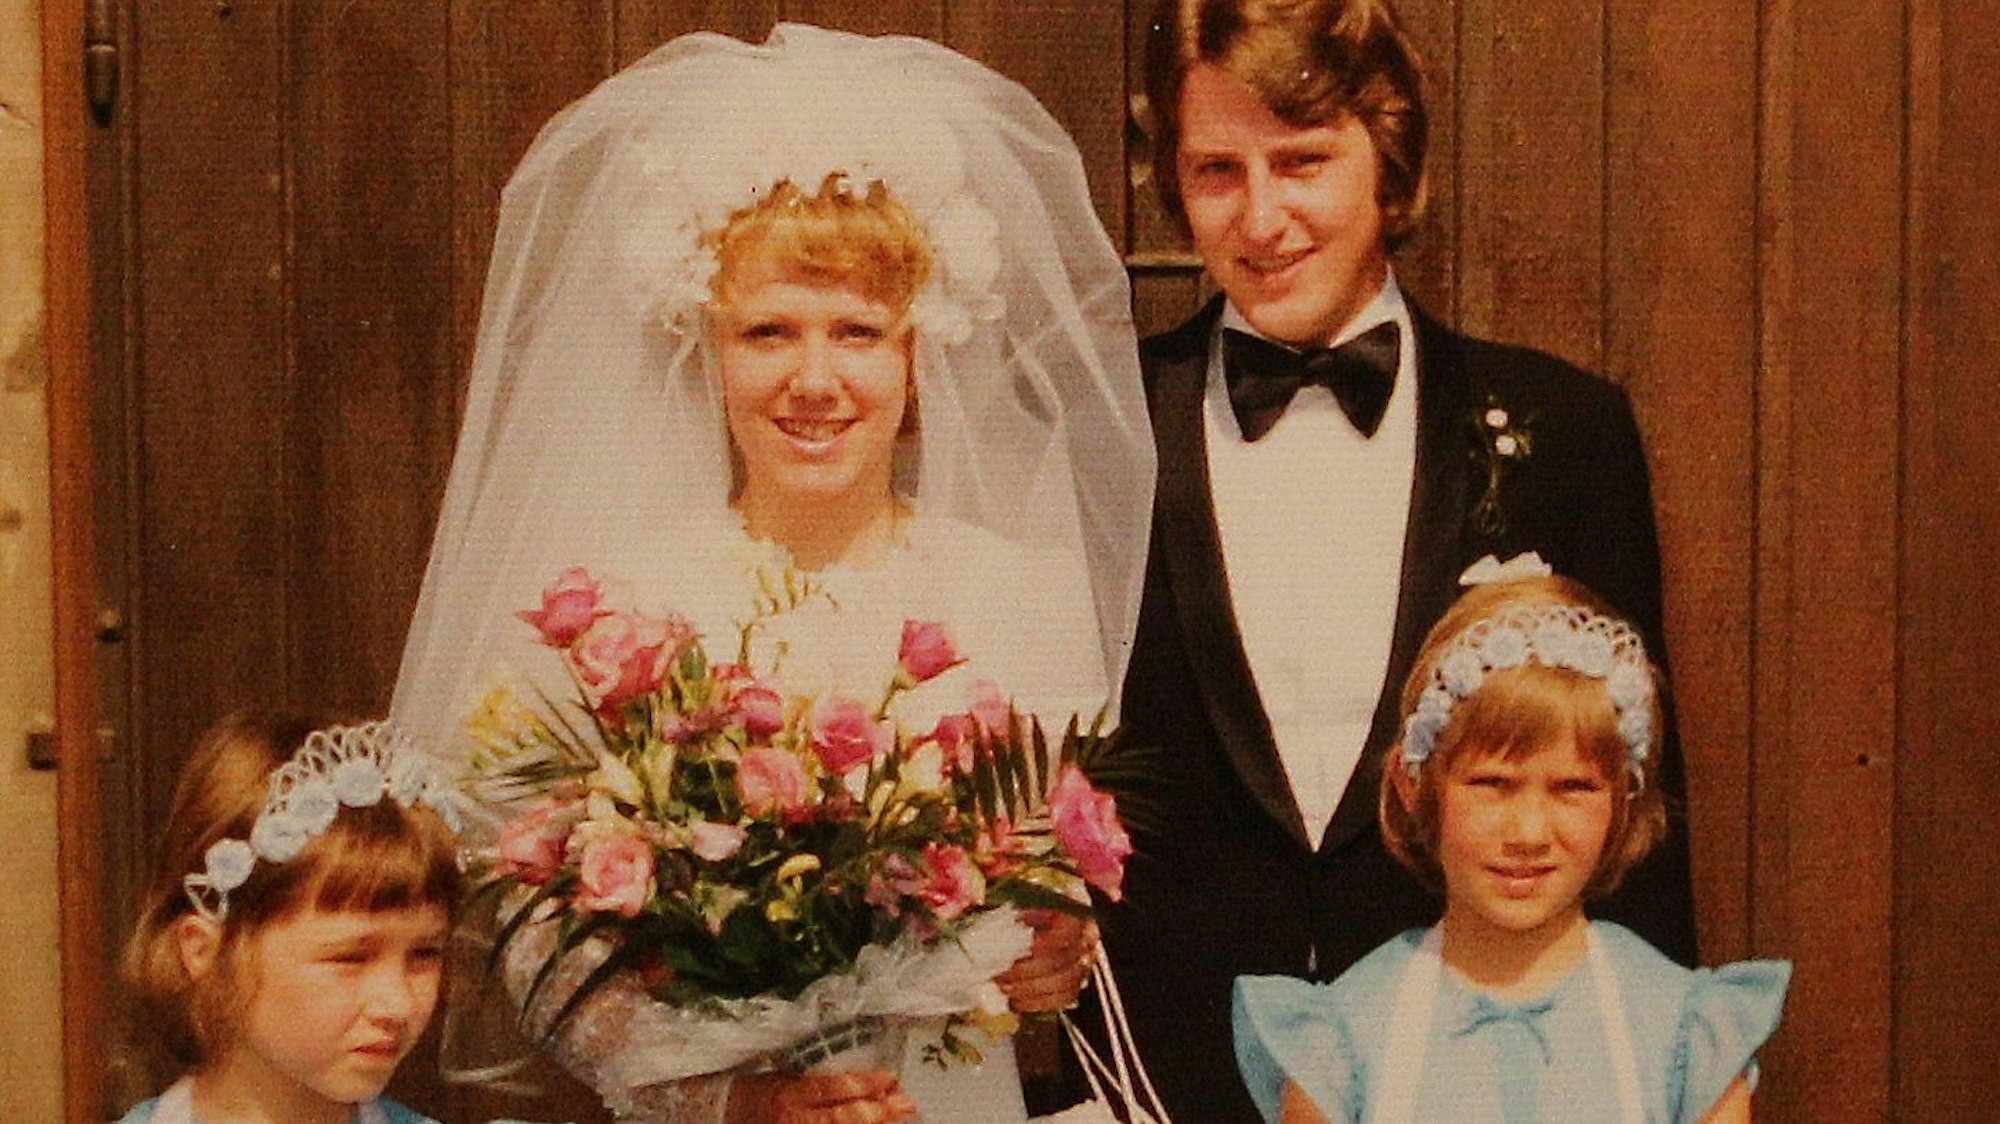 Die Braut im weißen Kleid mit Schleier, der Bräutigam mit Anzug und Fliege und mit dabei zwei Brautjungfern.